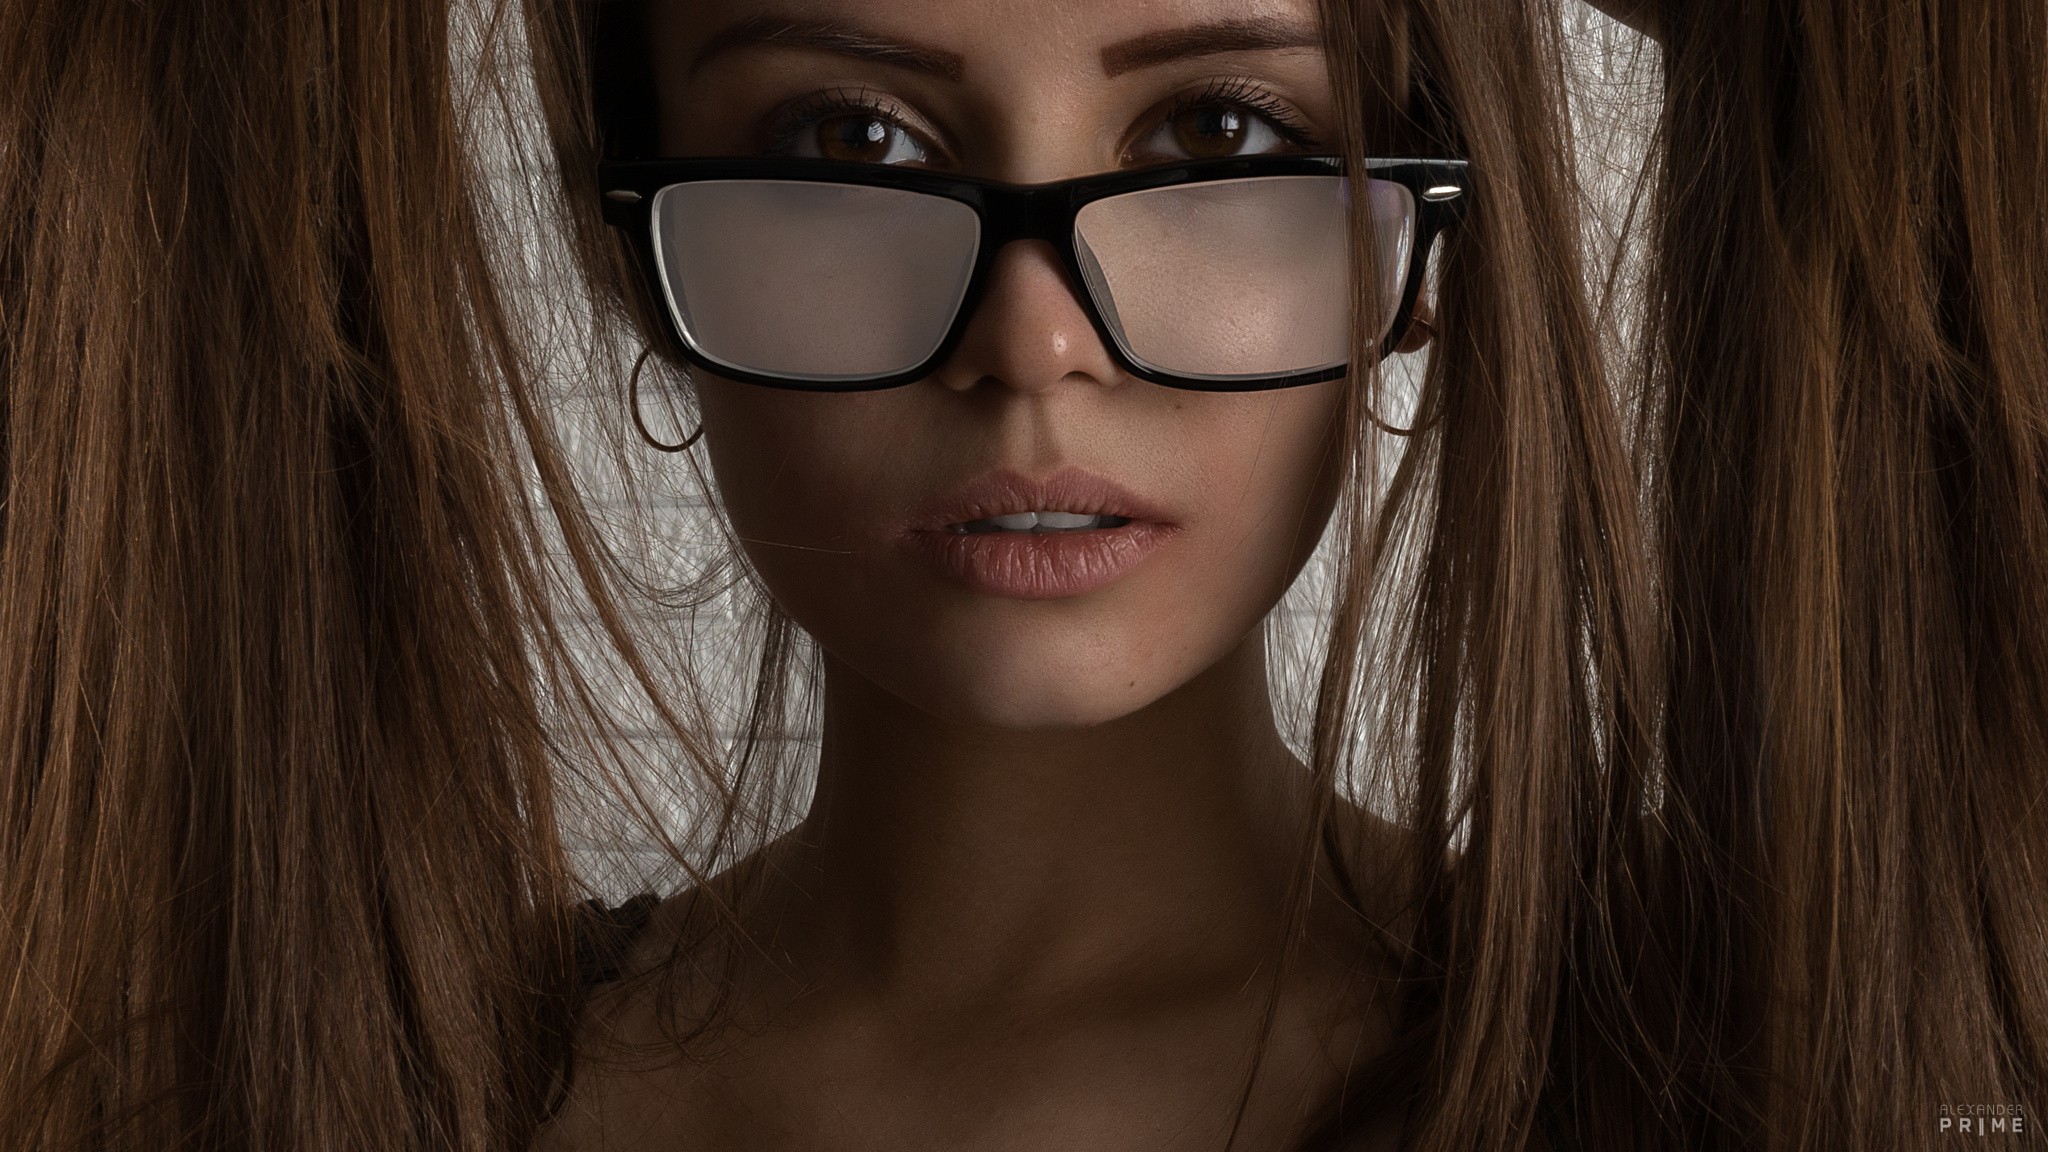 Women Closeup Face Portrait Women With Glasses Alexander Prime 2048x1152